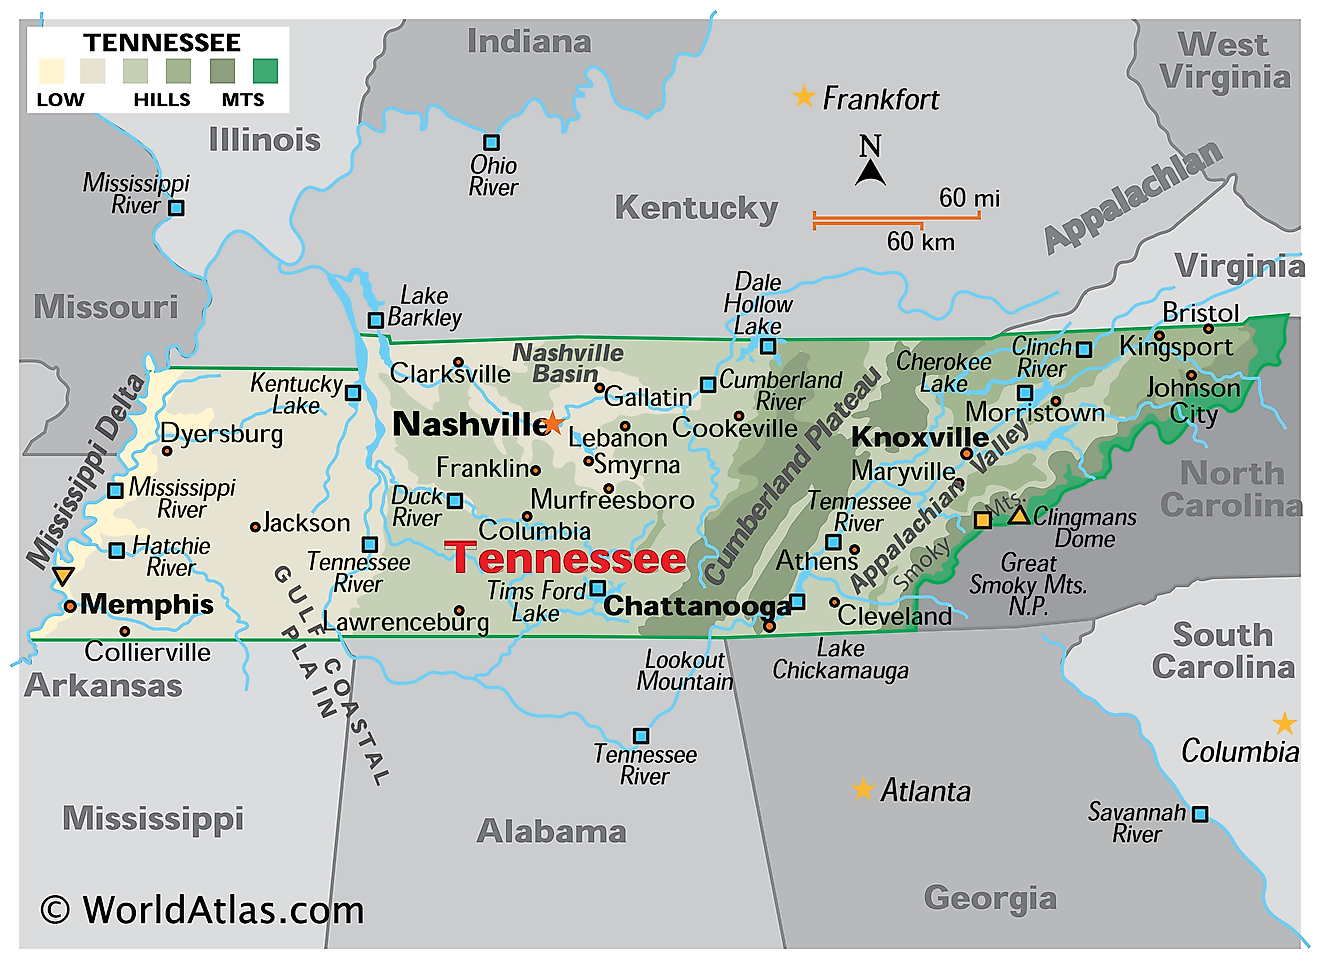 テネシー州の物理的な地図。 それは、その山脈、主要な川や湖を含むテネシー州の物理的な特徴を示しています。